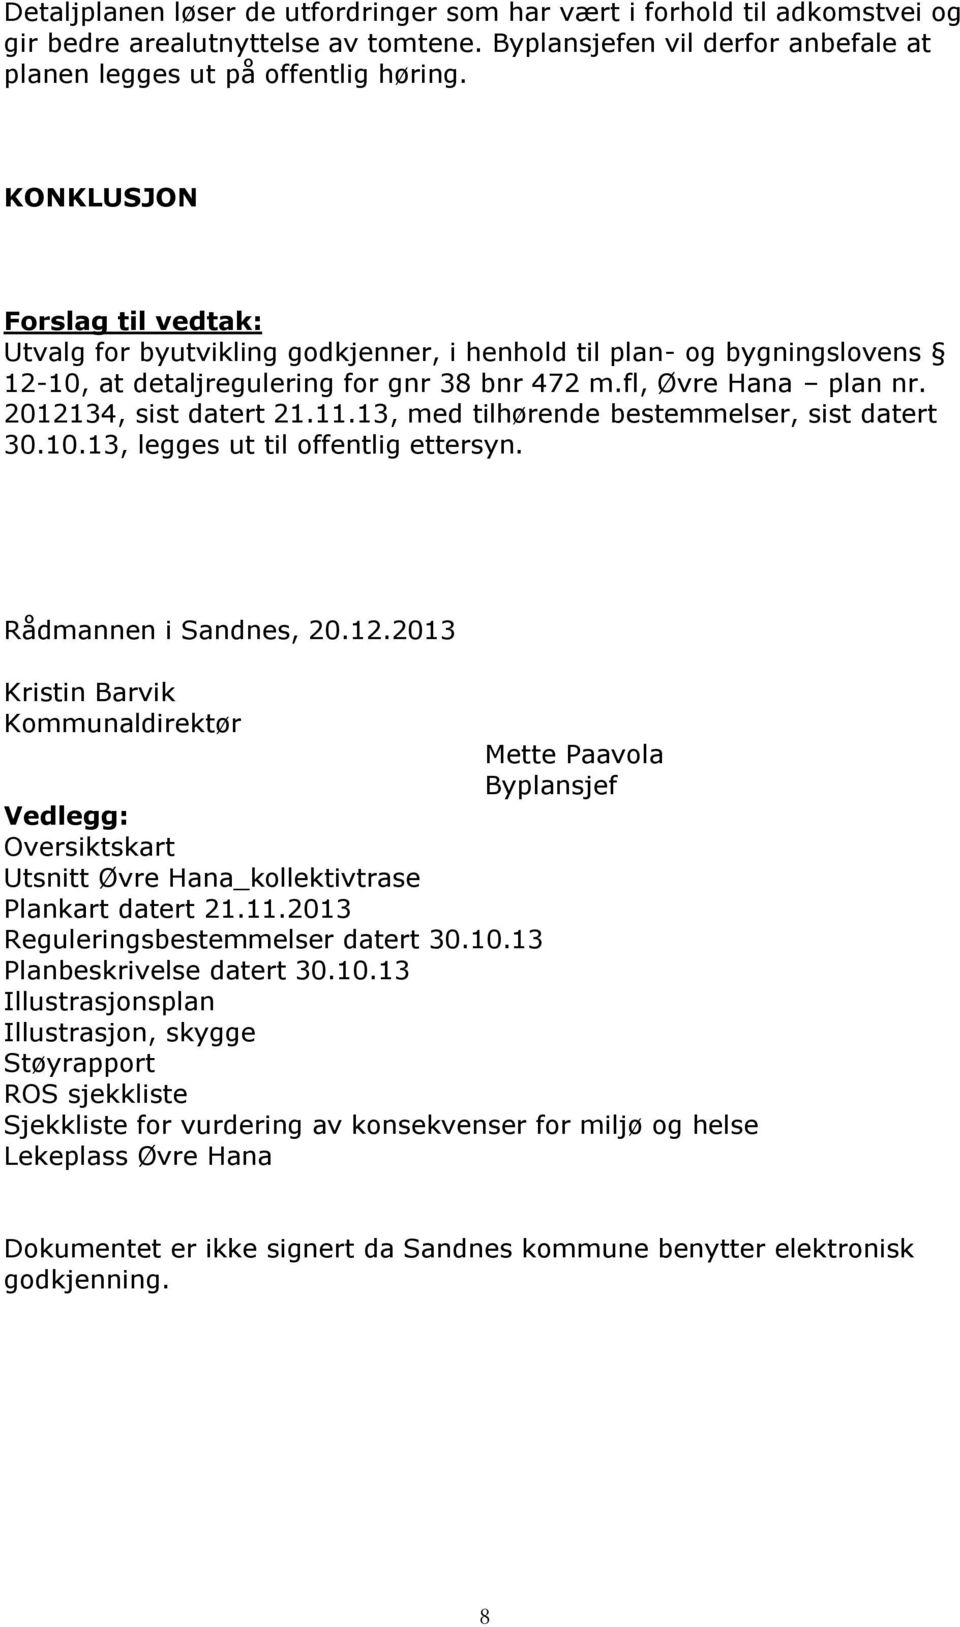 11.13, med tilhørende bestemmelser, sist datert 30.10.13, legges ut til offentlig ettersyn. Rådmannen i Sandnes, 20.12.